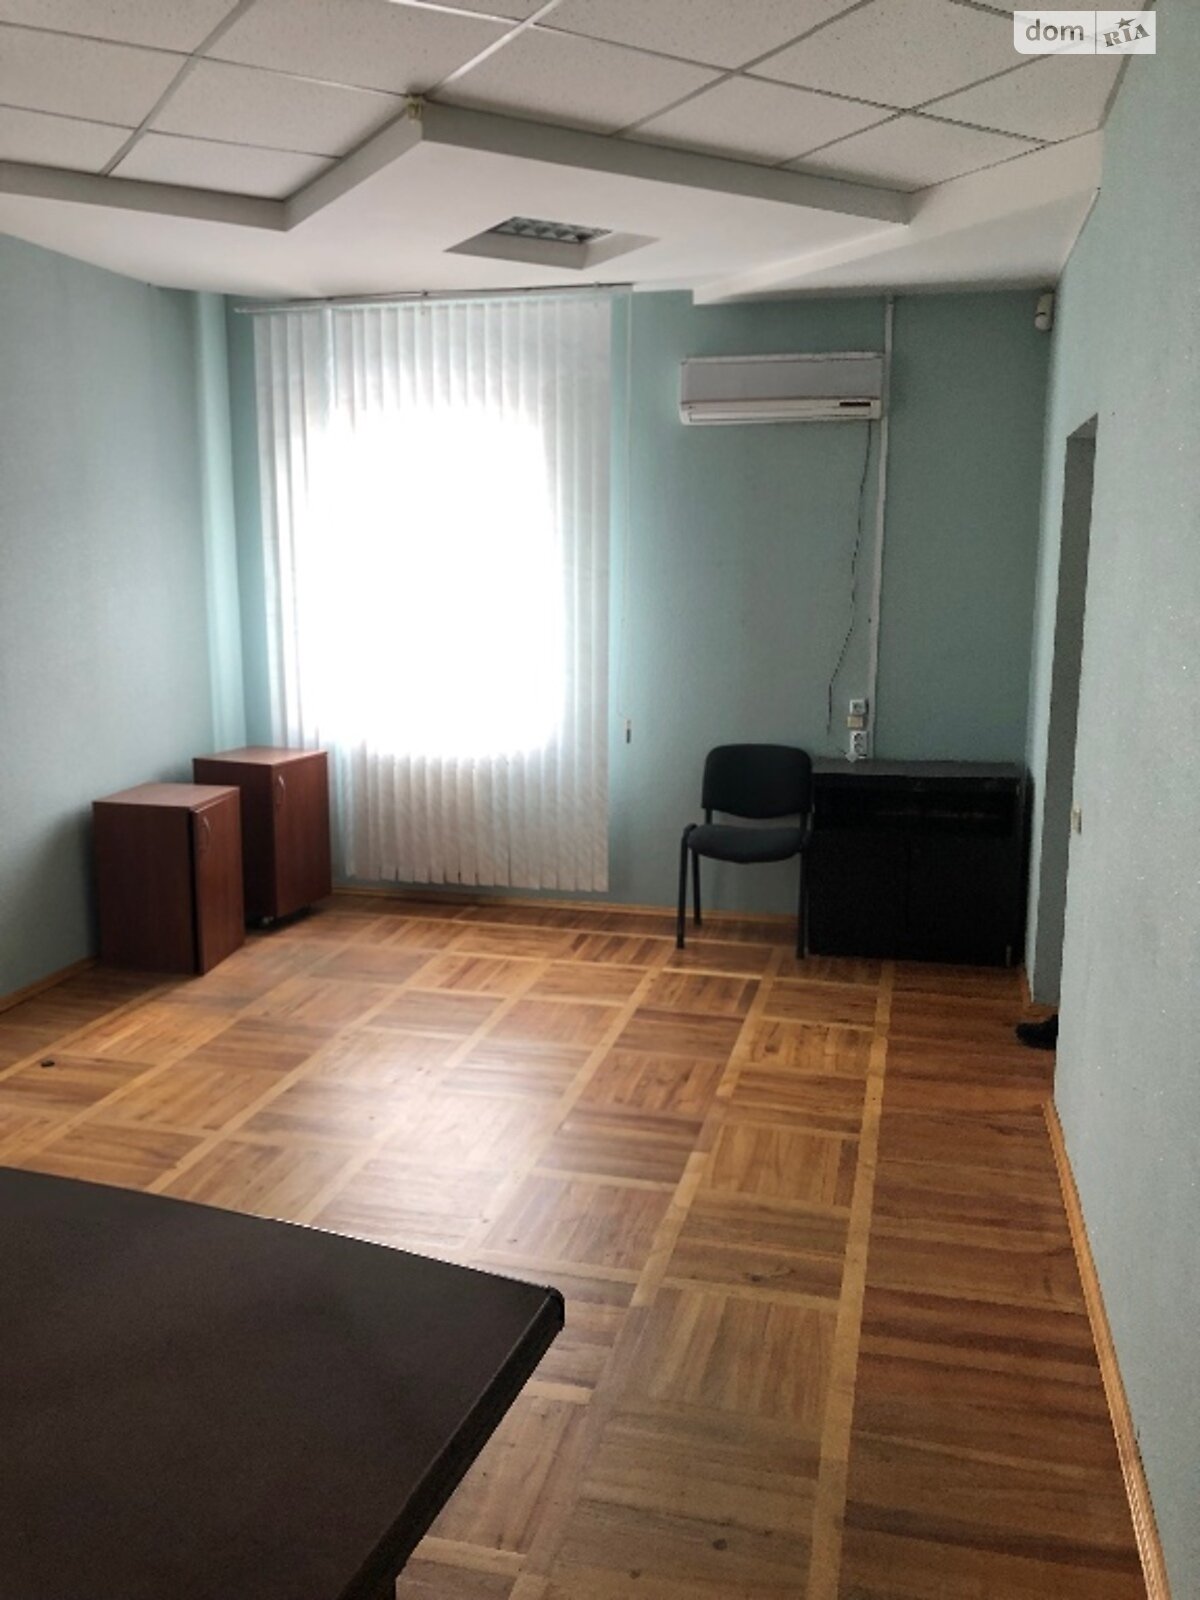 Аренда офисного помещения в Виннице, ул. Брацлавская 39, помещений - 3, этаж - 1 фото 1